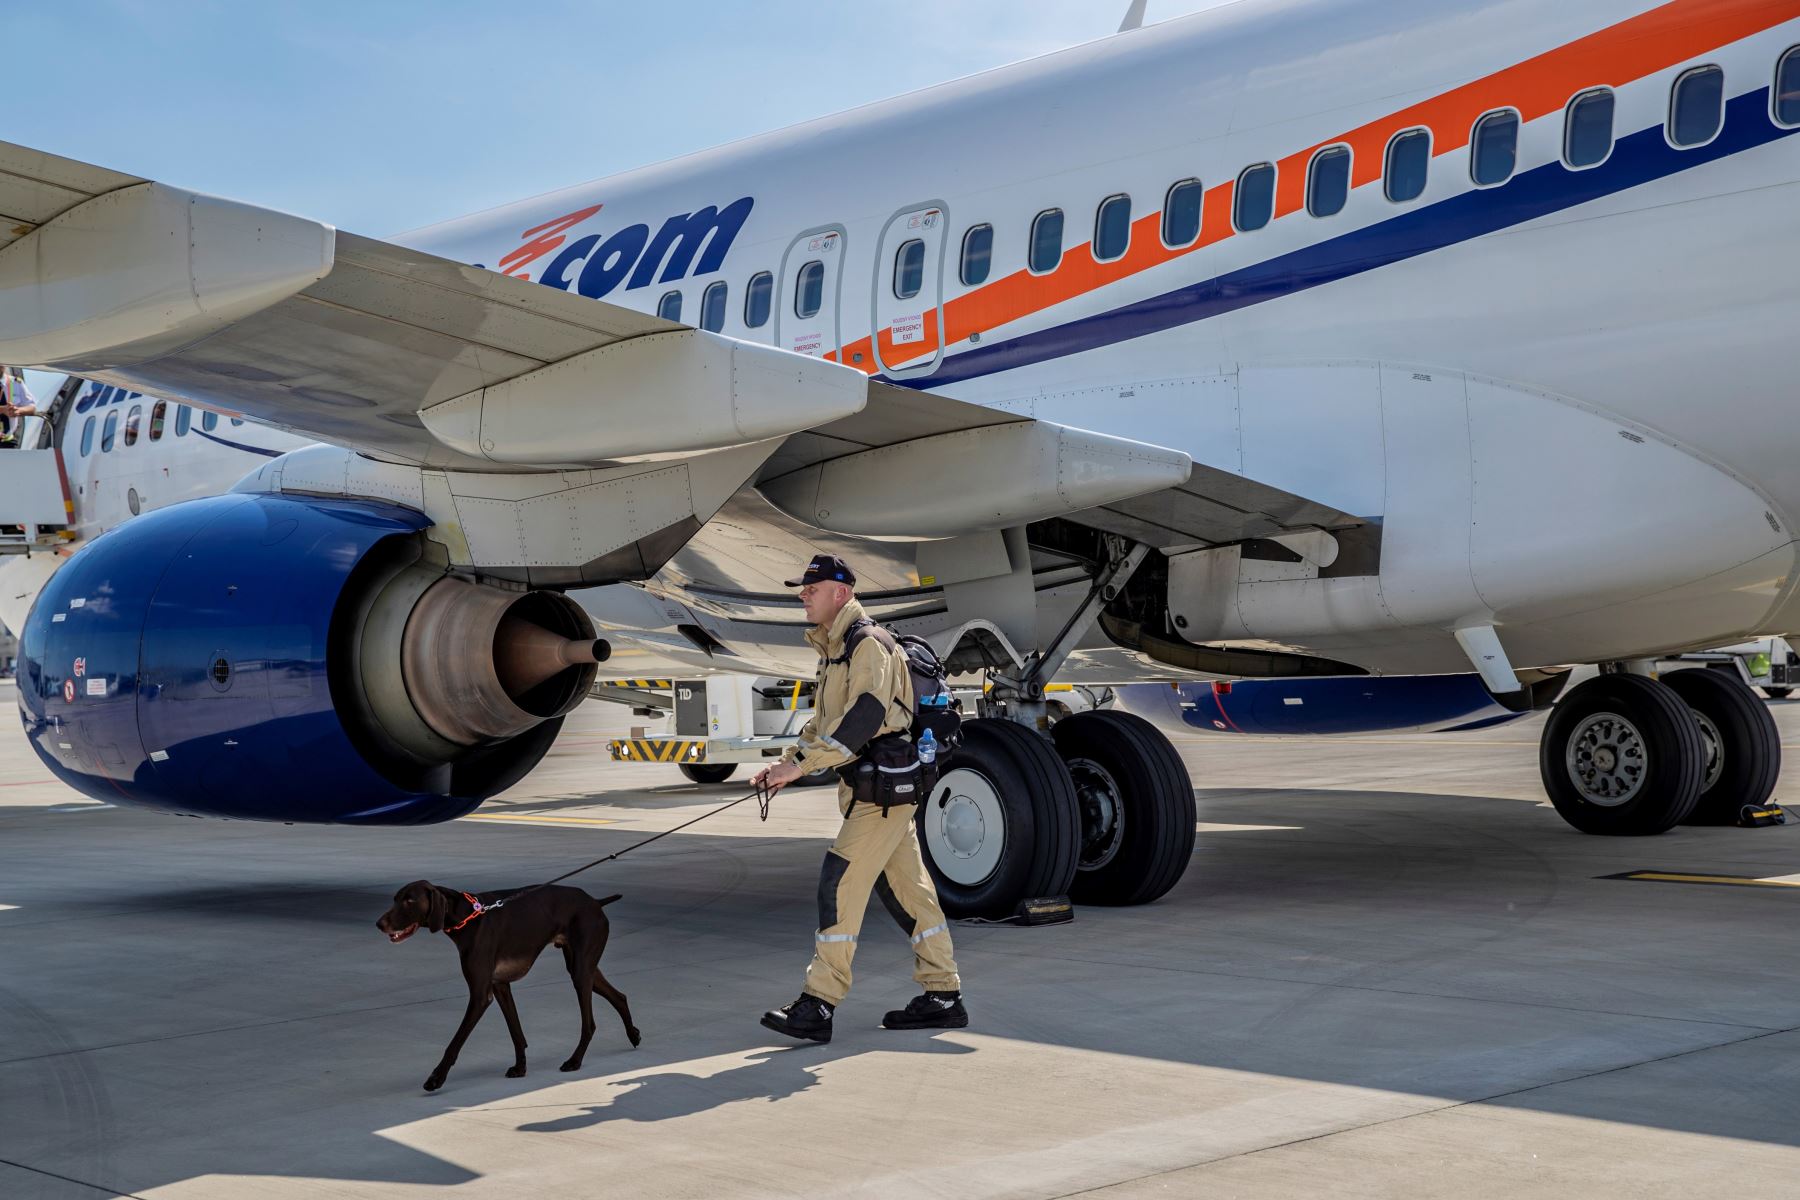 Personal de búsqueda y rescate urbano (USAR) de la República Checa viaja a  Beirut con 37 expertos en búsqueda y 5 perros para apoyar a en los rescates en Beirut tras la explosión que devastó nación de Oriente Medio.
Foto: EFE